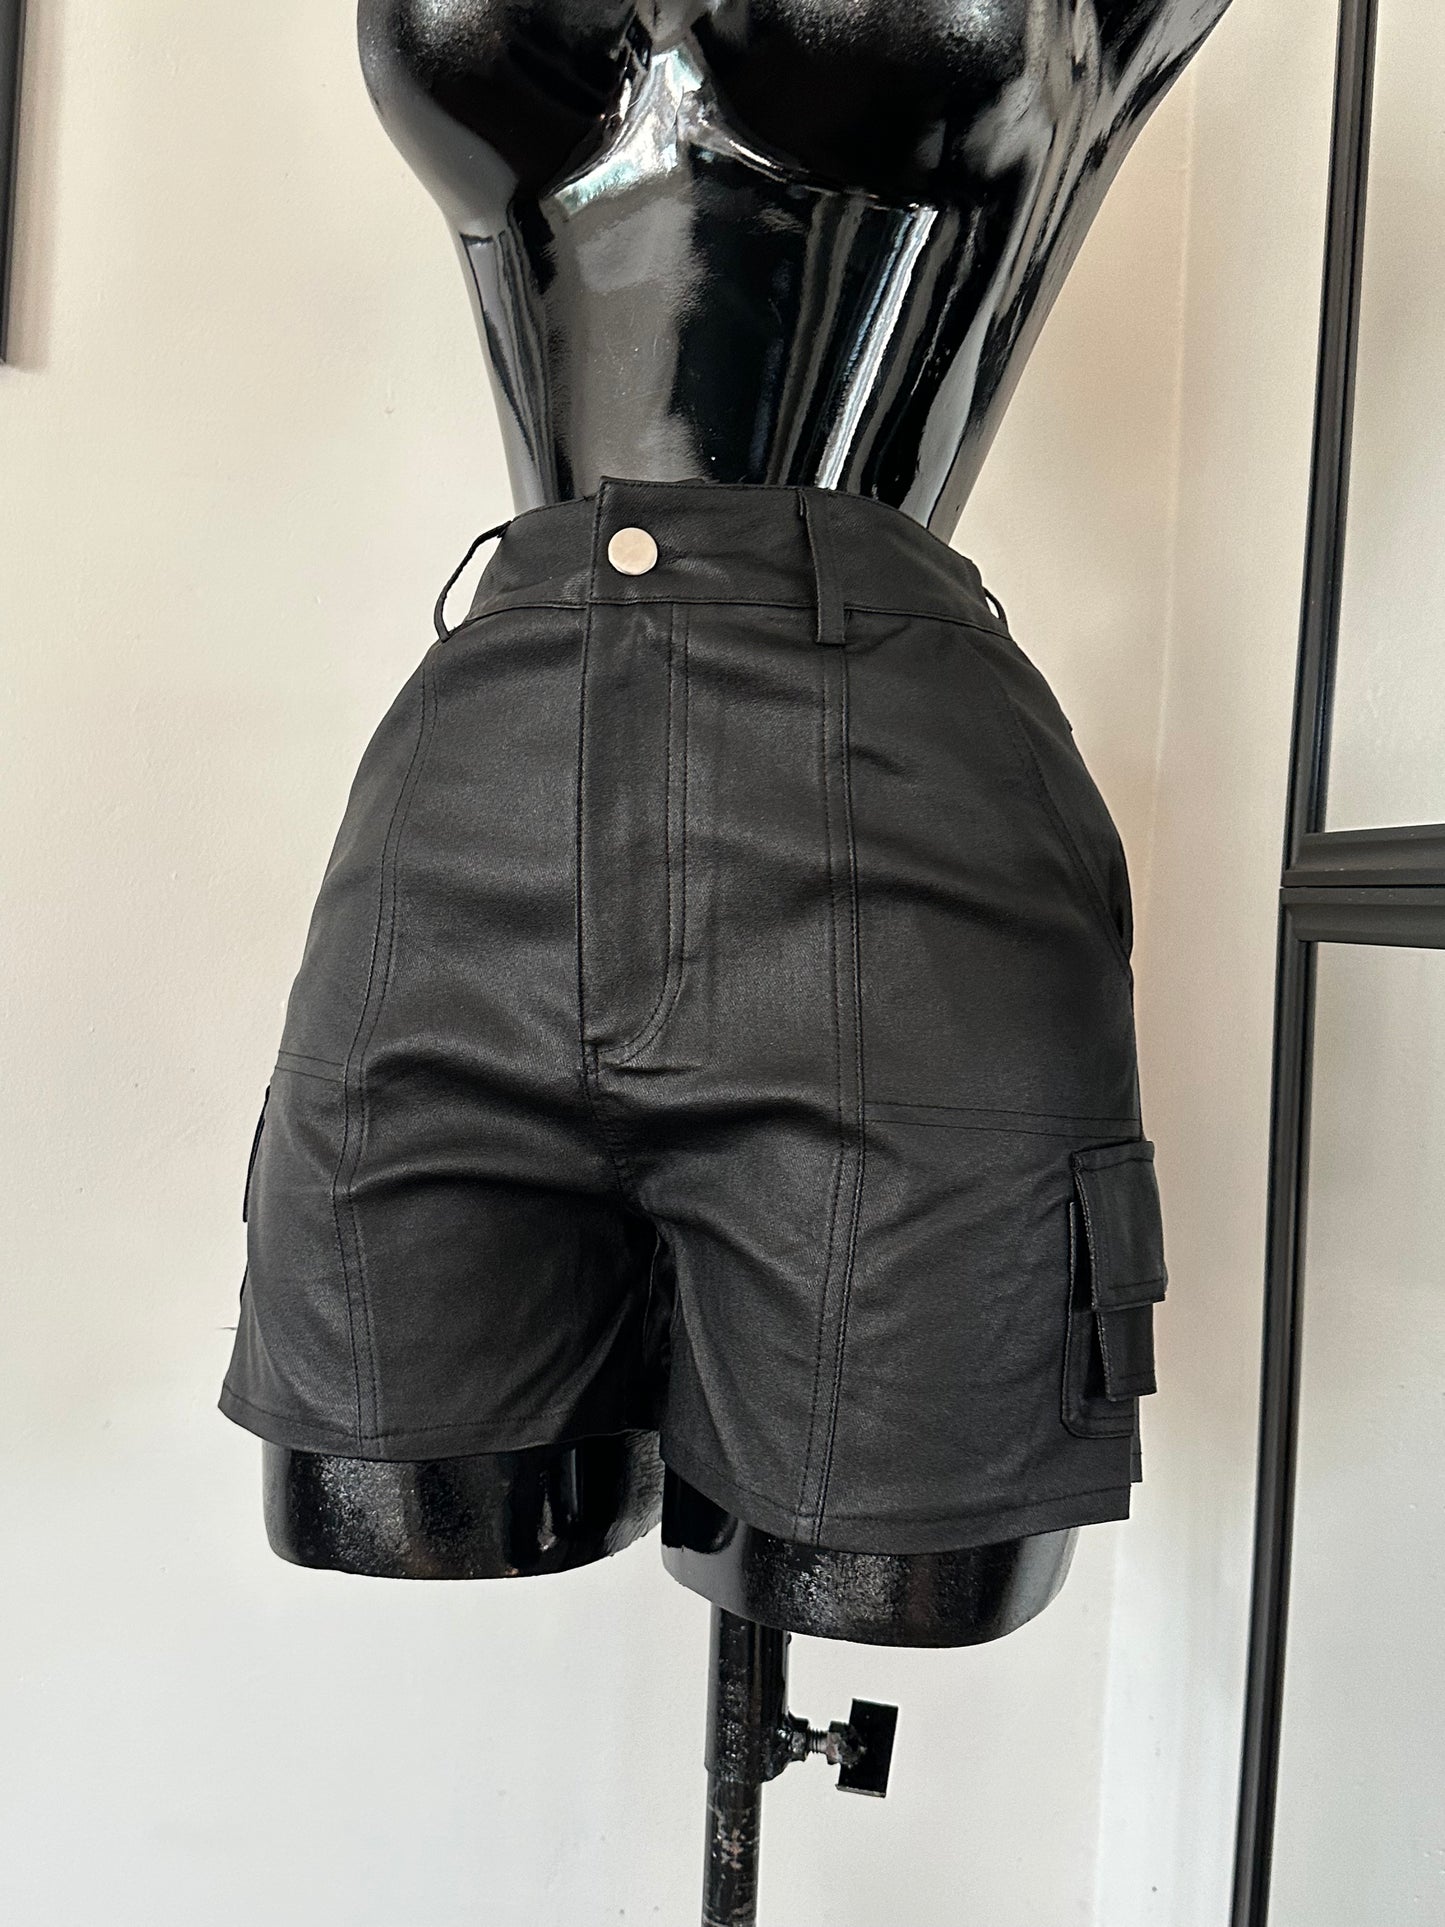 Cargo leather shorts